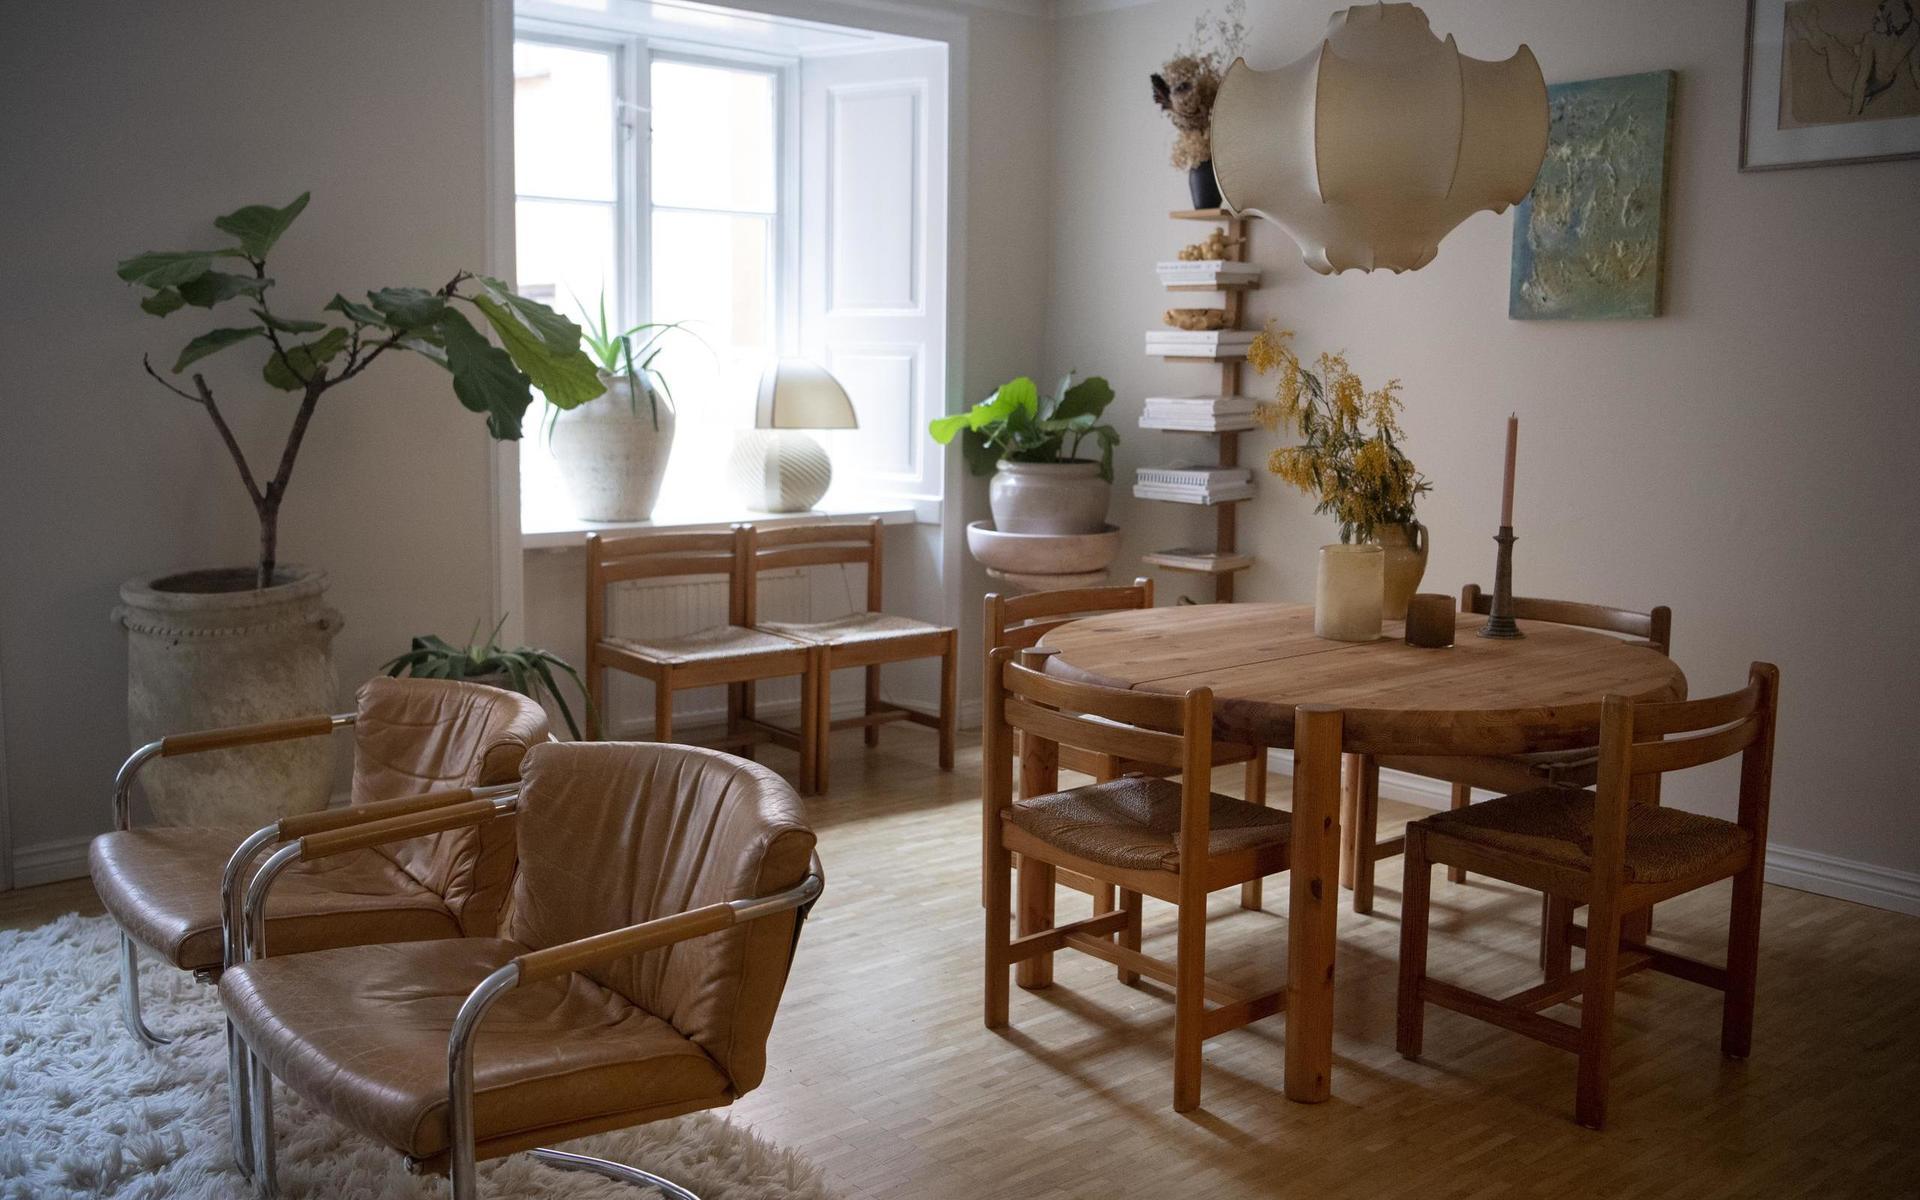 Skinnfåtöljerna Sling är tillverkade av Ire möbler på 1980-talet. Matbordet är i furu från 1970-talet.